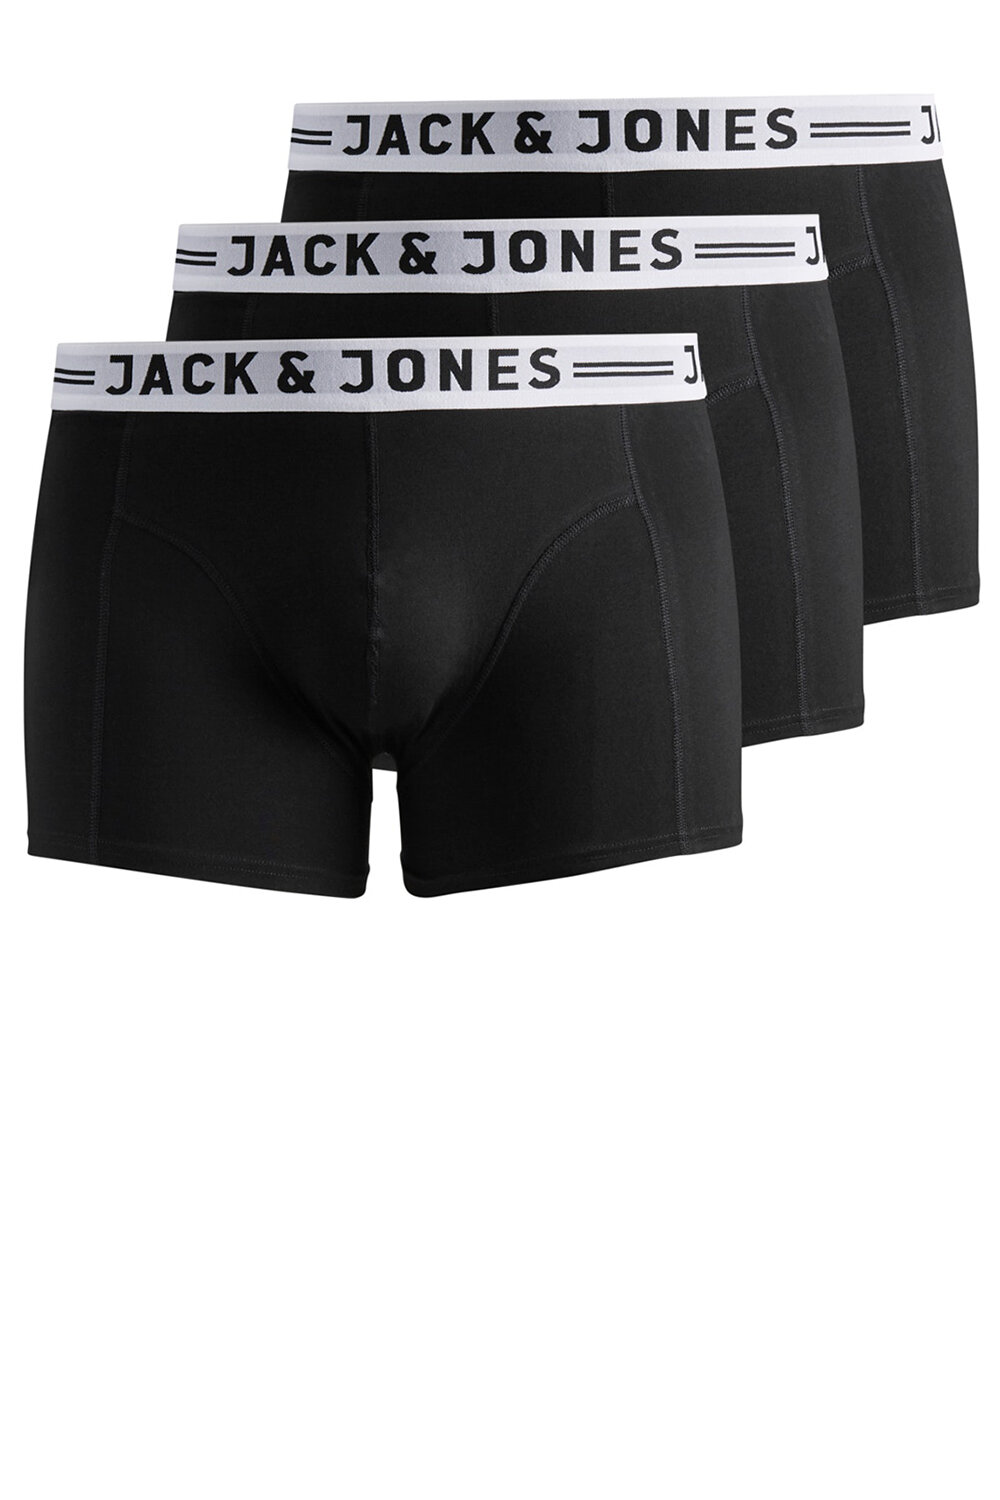 Tights mænd fra Jack & Jones - Underbukser Str.